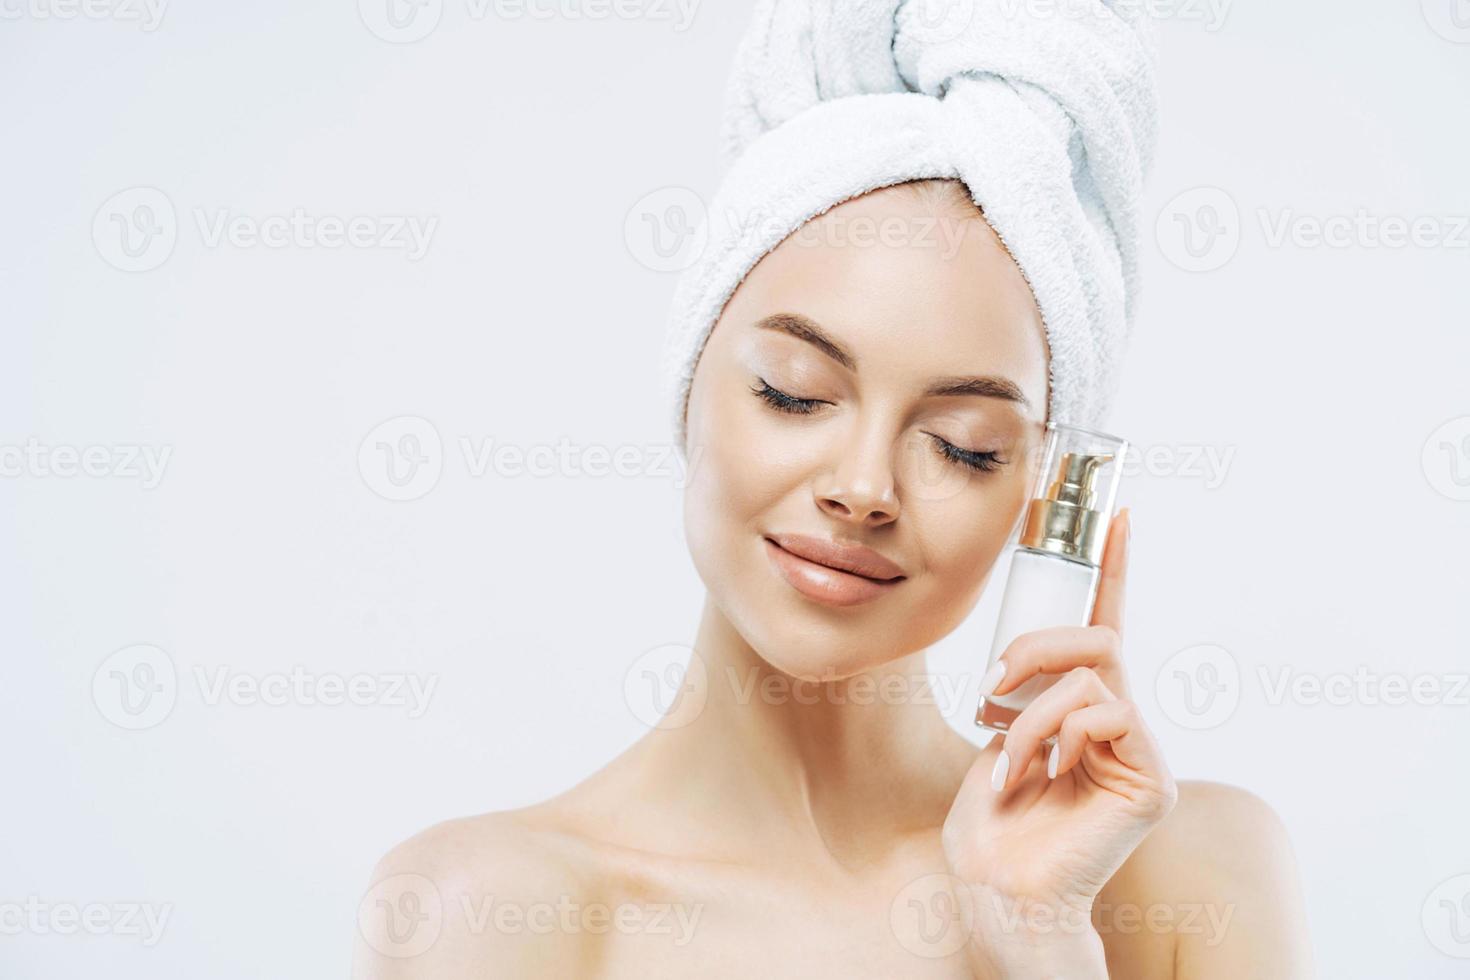 cuidado de la piel, concepto cosmético. foto de una joven europea relajada y sana parada con los ojos cerrados, sostiene una botella de producto cosmético para piel elástica, posa medio desnuda sobre fondo blanco.